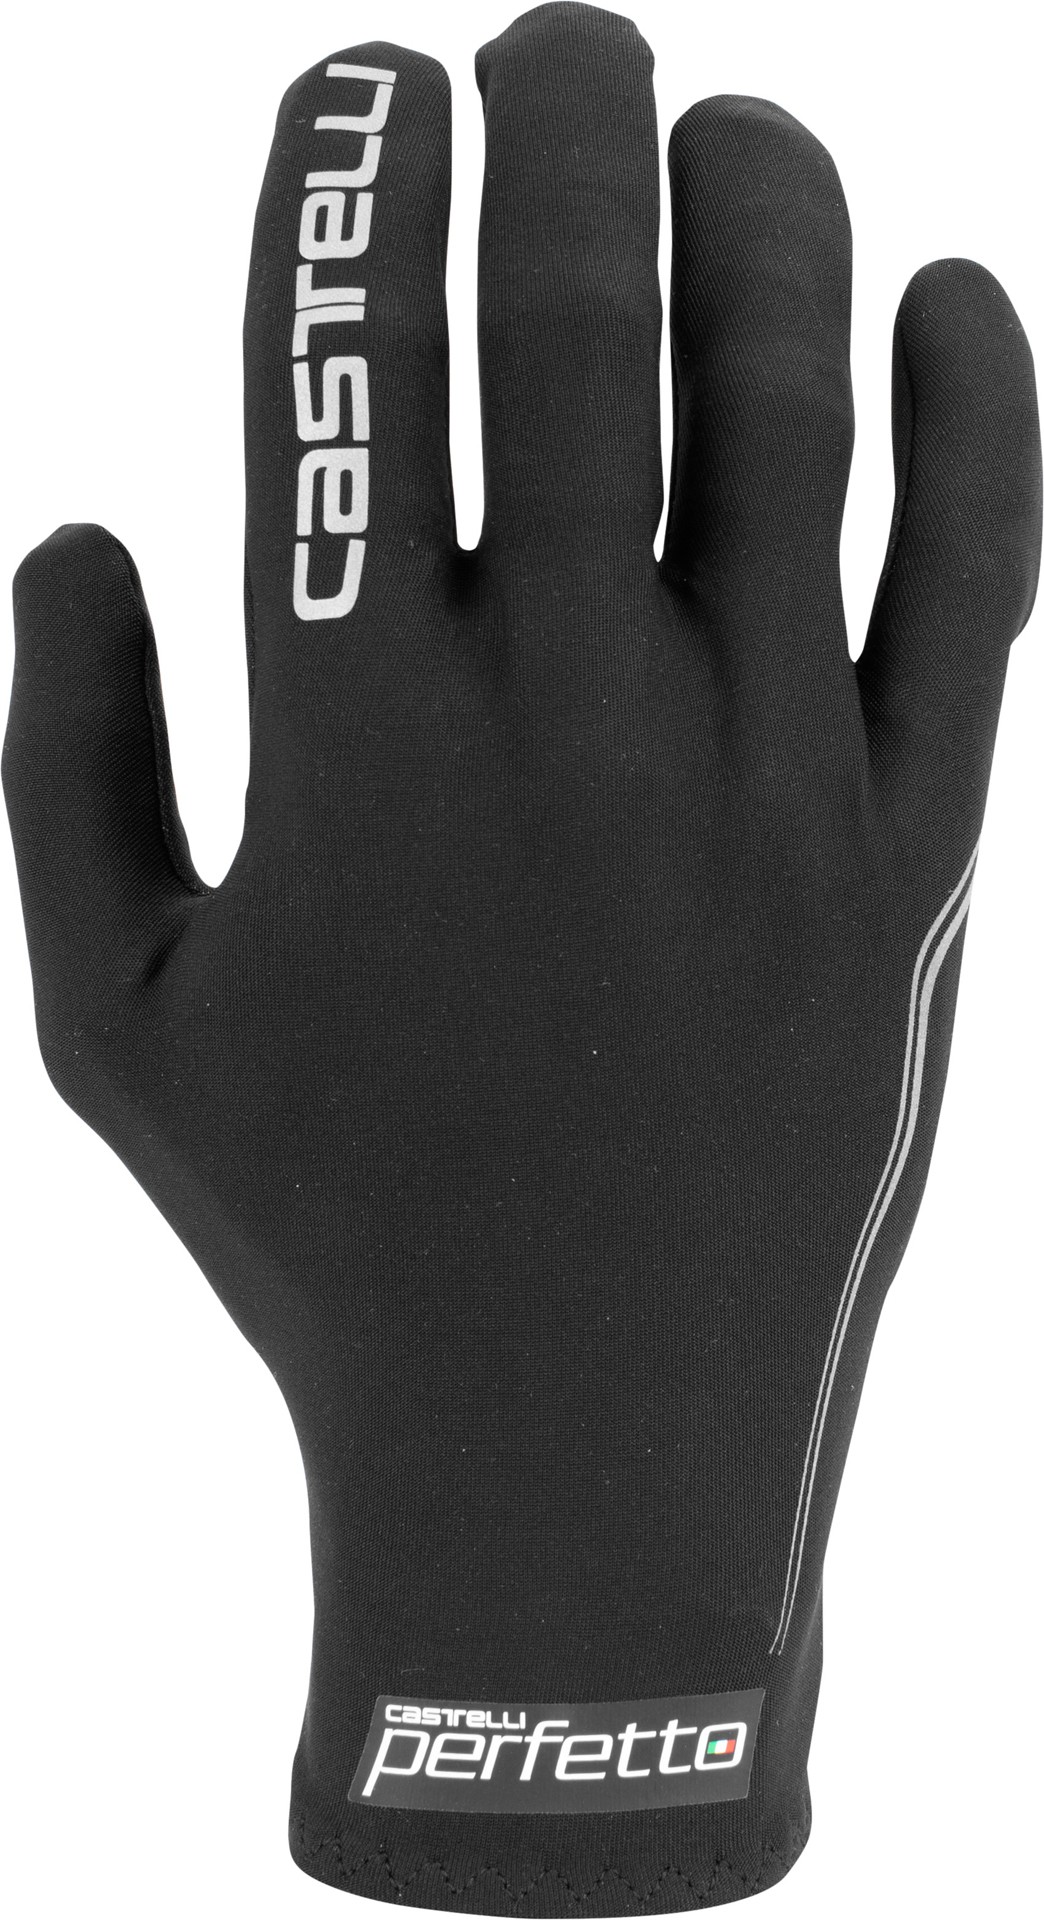 Castelli perfetto light gants de cyclisme noir